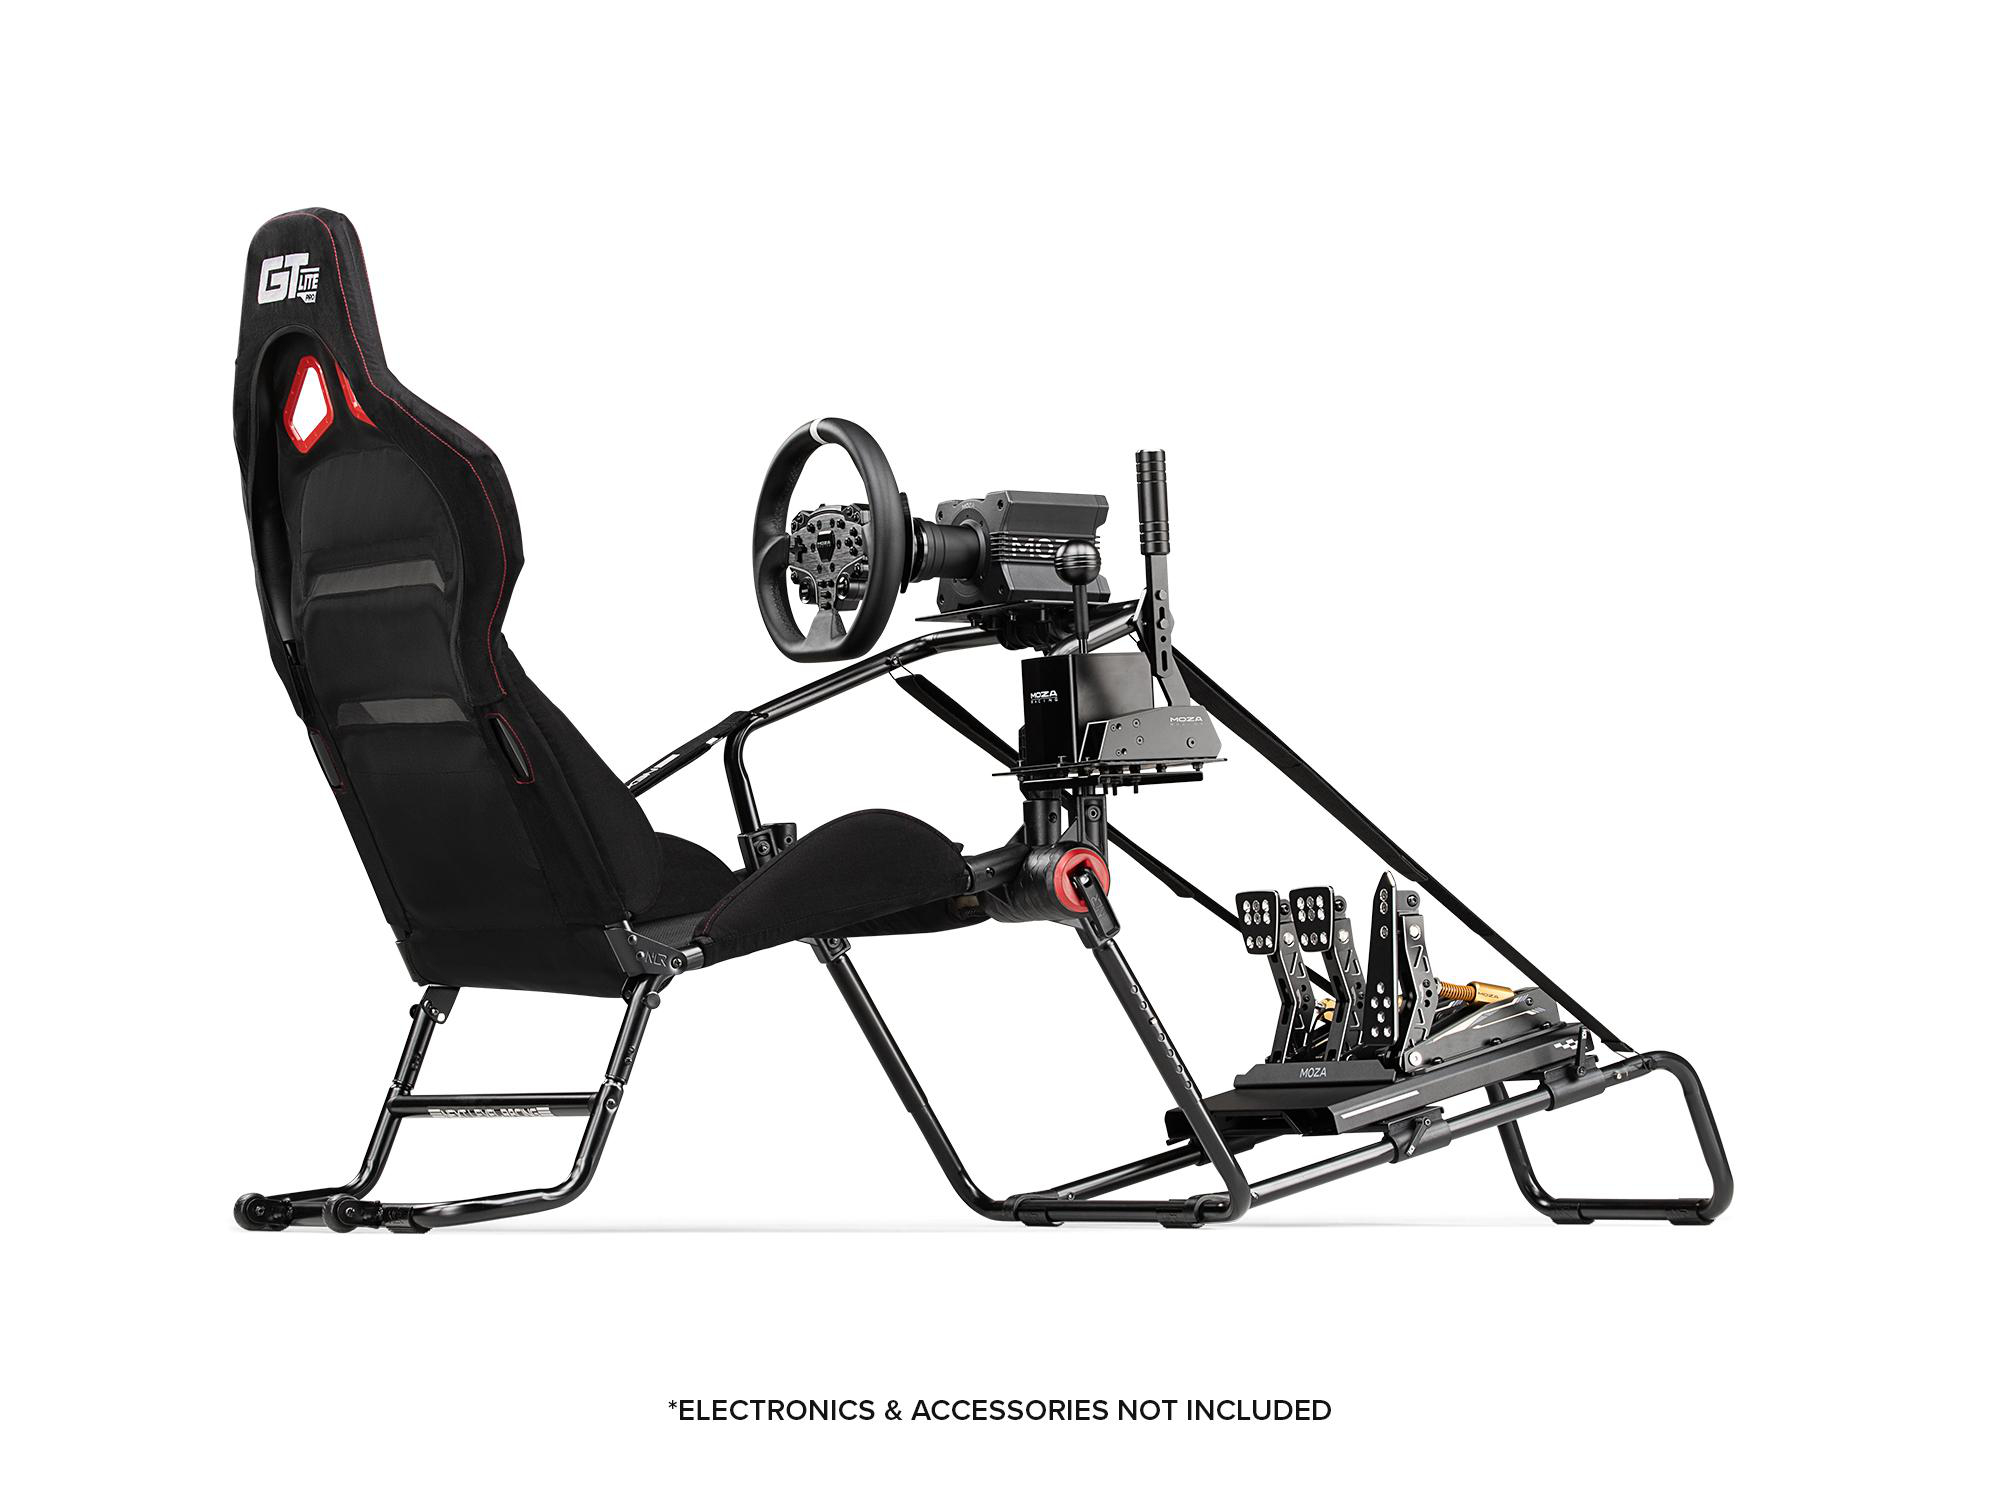 NEXT LEVEL RACING GTLite Pro, im perfekte jedem zusammenklappbare Ästhetik Sim-Racer auch Robustheit Renncockpit das bietet sowohl GT-Stil, das als